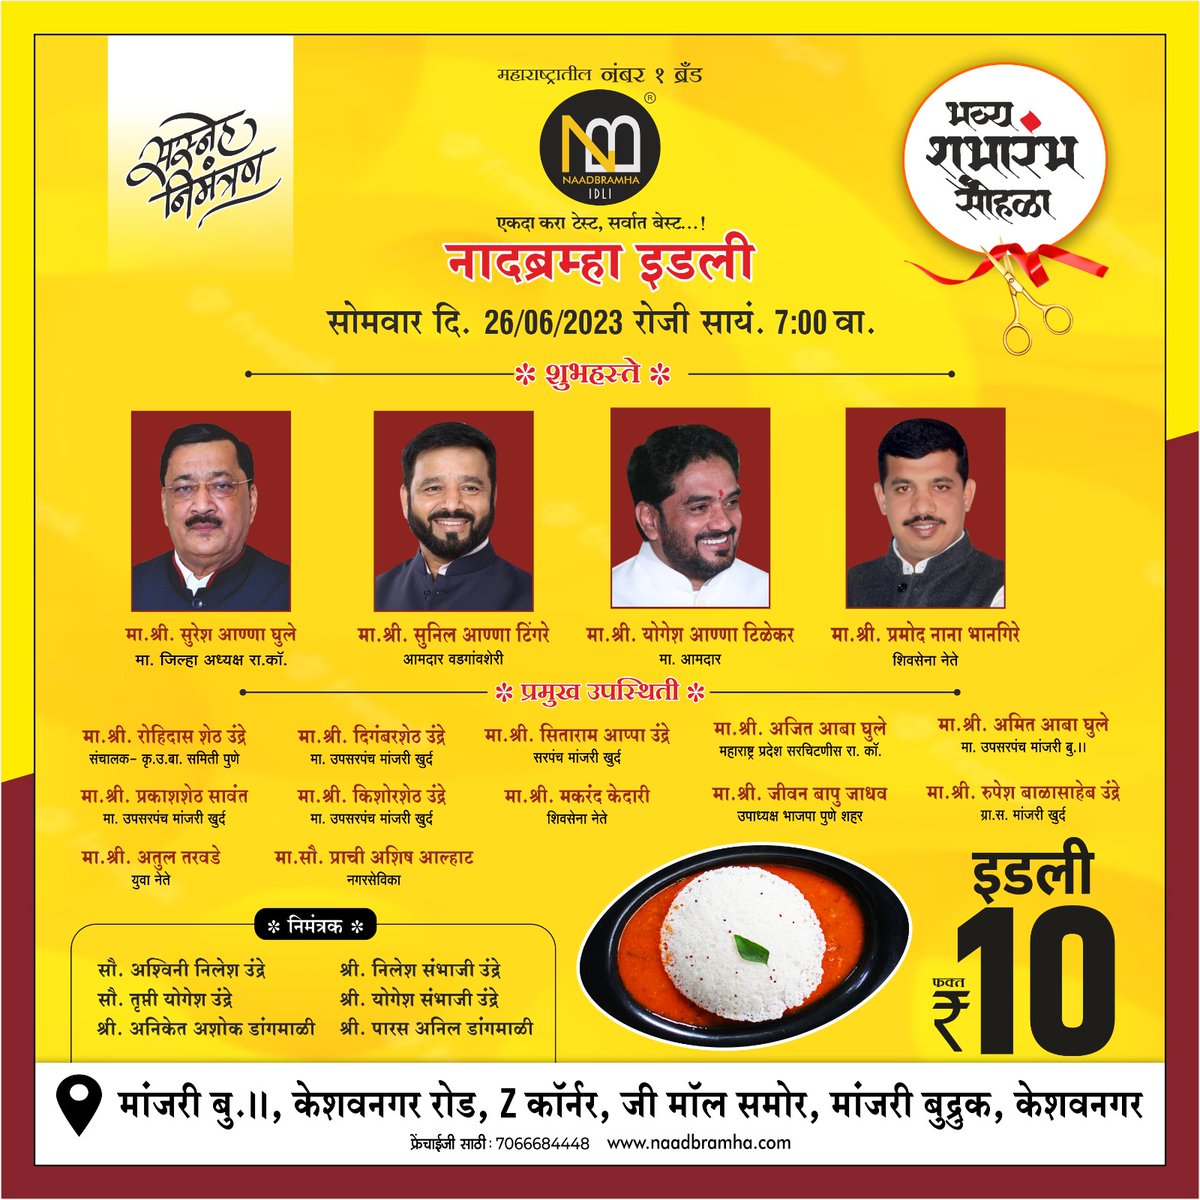 We are excited to welcome you to the grand opening ceremony of Naadbramha idli new branch at Keshav Nagar, Pune.🥳📷 

#naadbramhaidli #idli #idlisambar #southindianfood #maharashtra #newbranch #openingceremony #opening #keshavnagar #grandopening